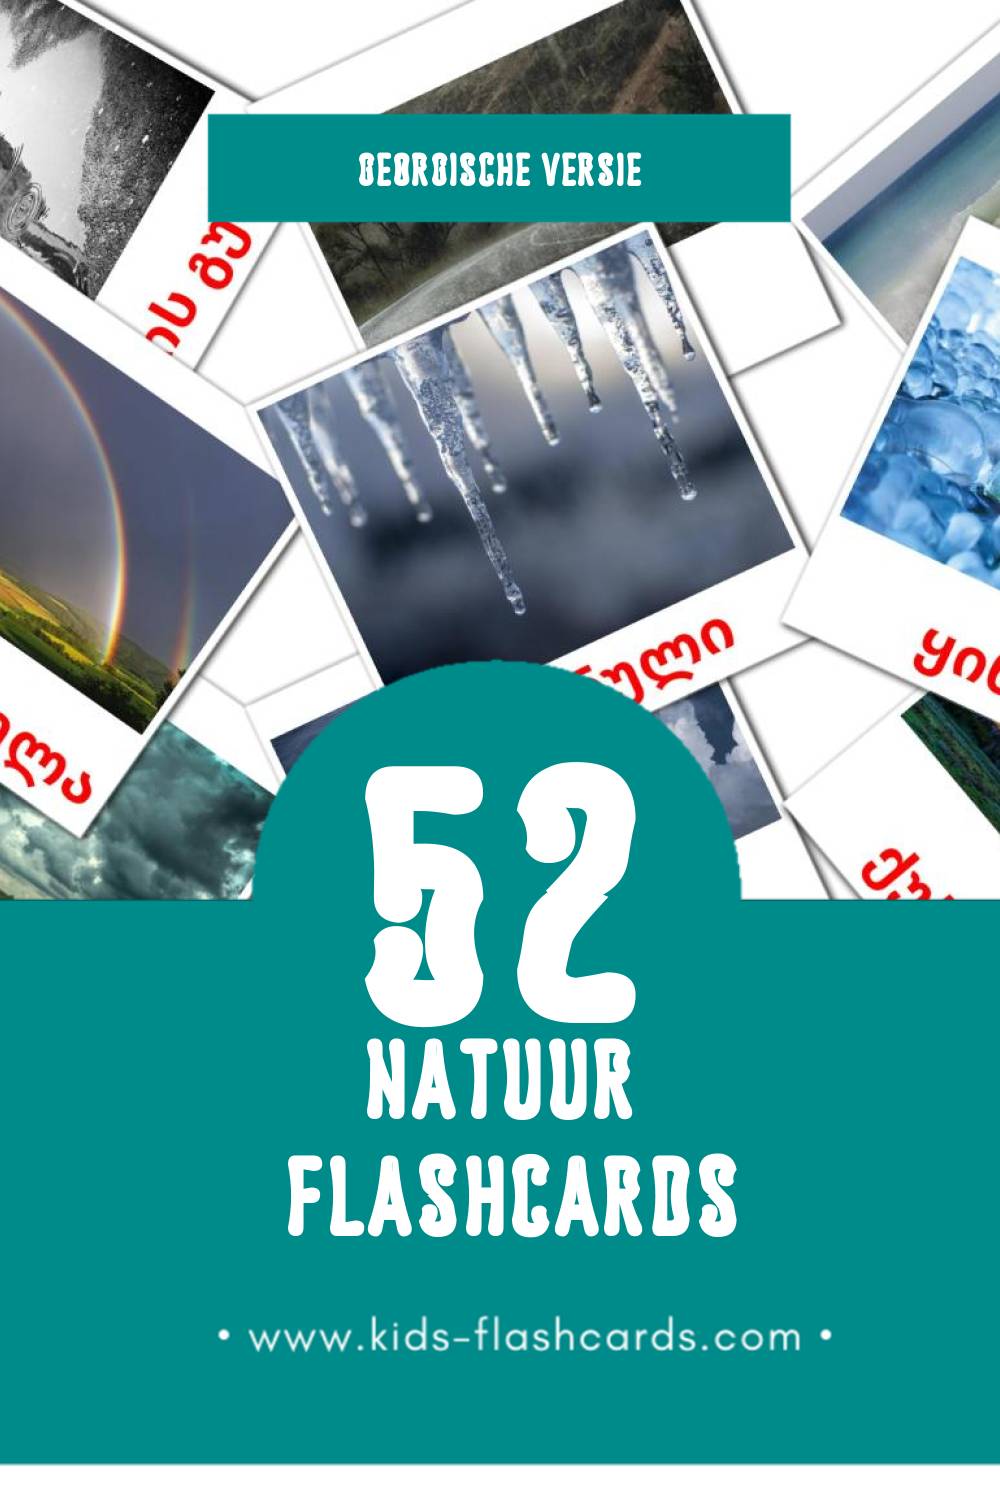 Visuele პლანეტები Flashcards voor Kleuters (52 kaarten in het Georgisch)